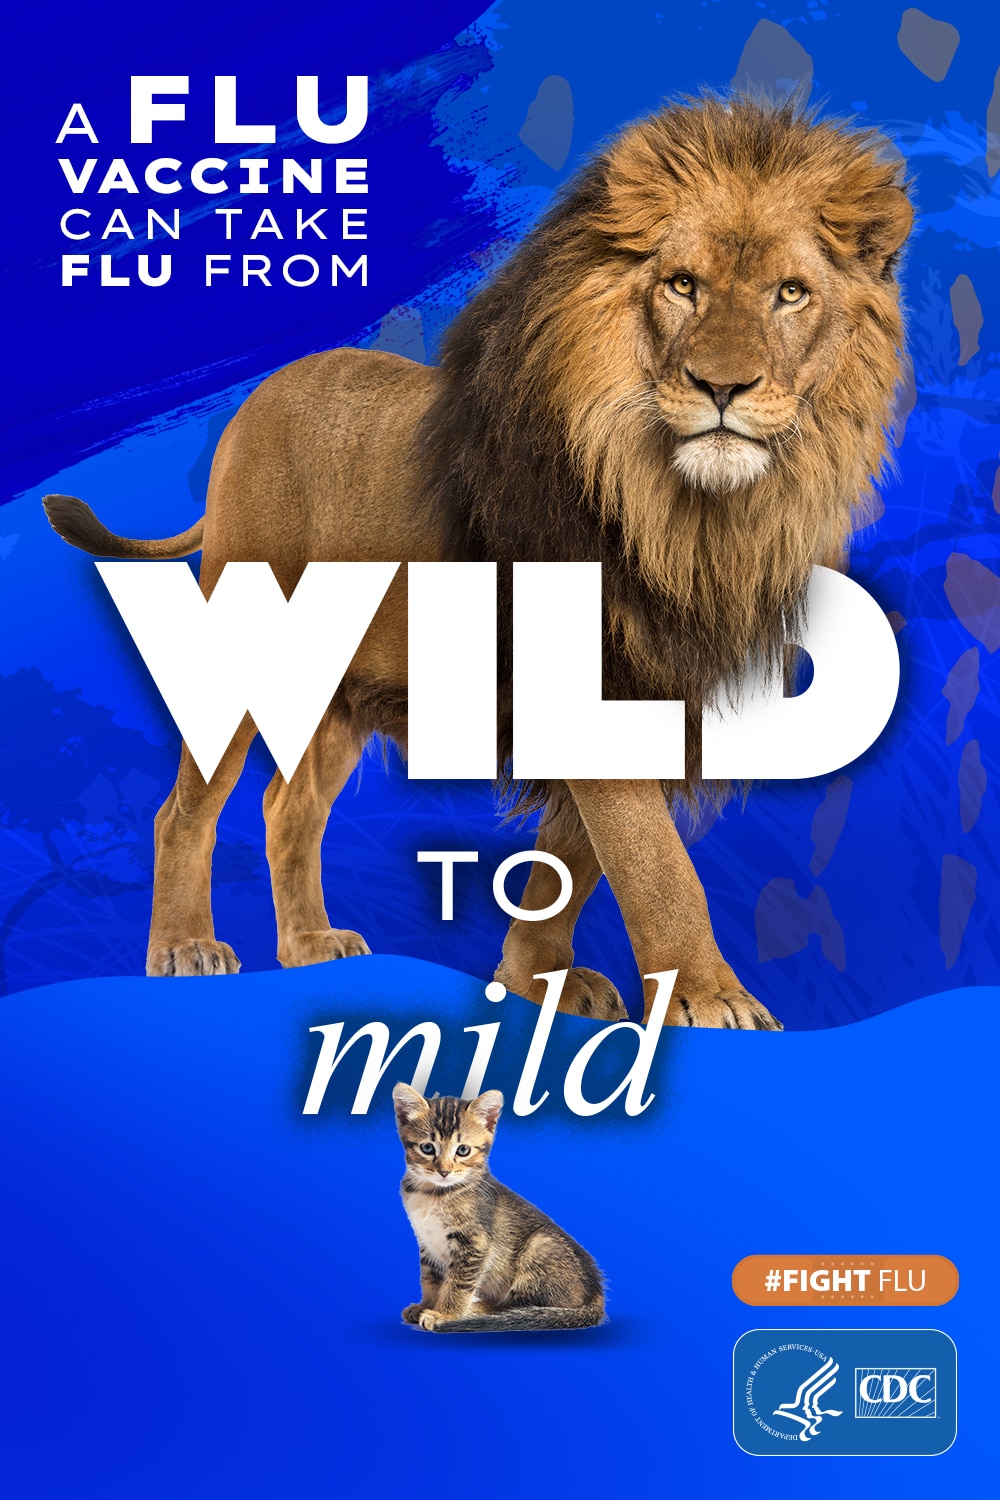 león y gatito con el texto: La vacuna contra la influenza puede calmar a la bestia #CombateLaInfluenza Logotipo de los CDC